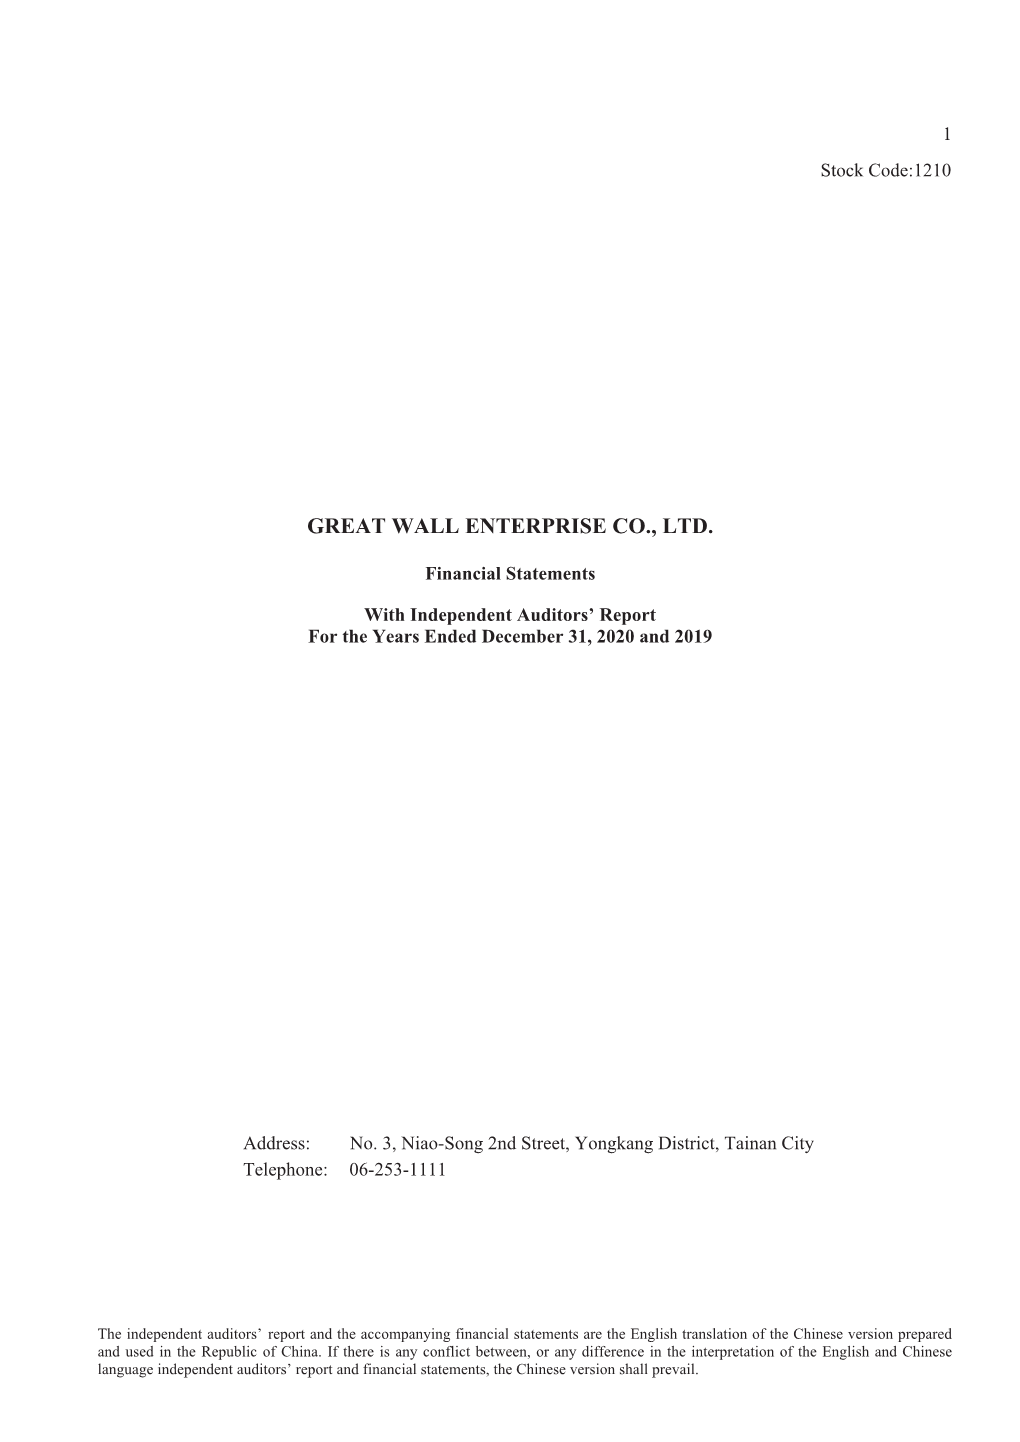 Great Wall Enterprise Co., Ltd